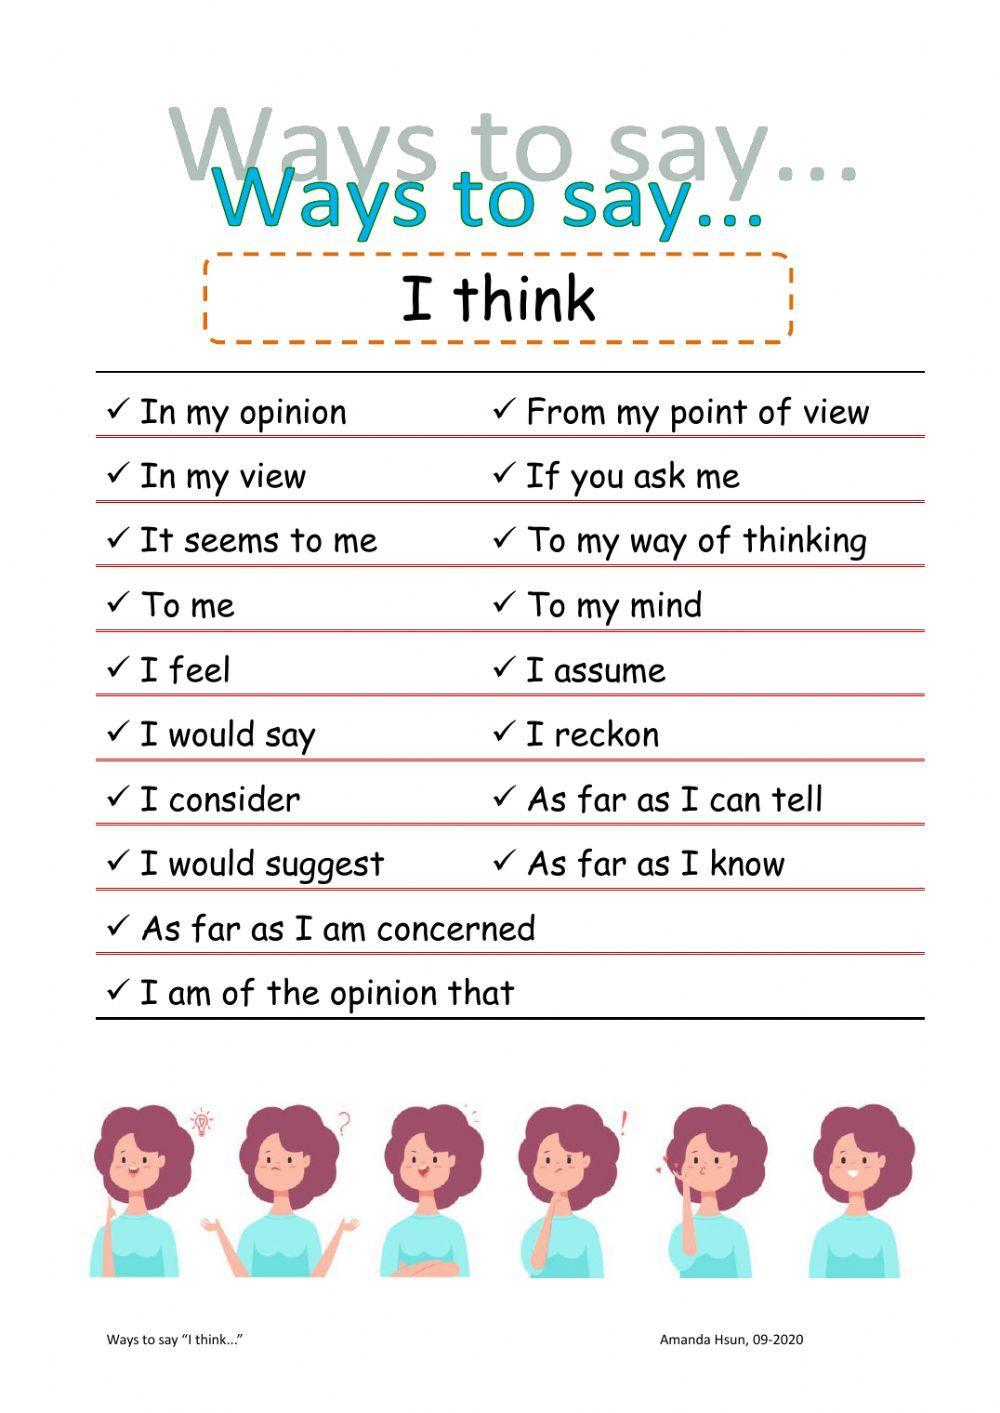 Ways to say -I think-